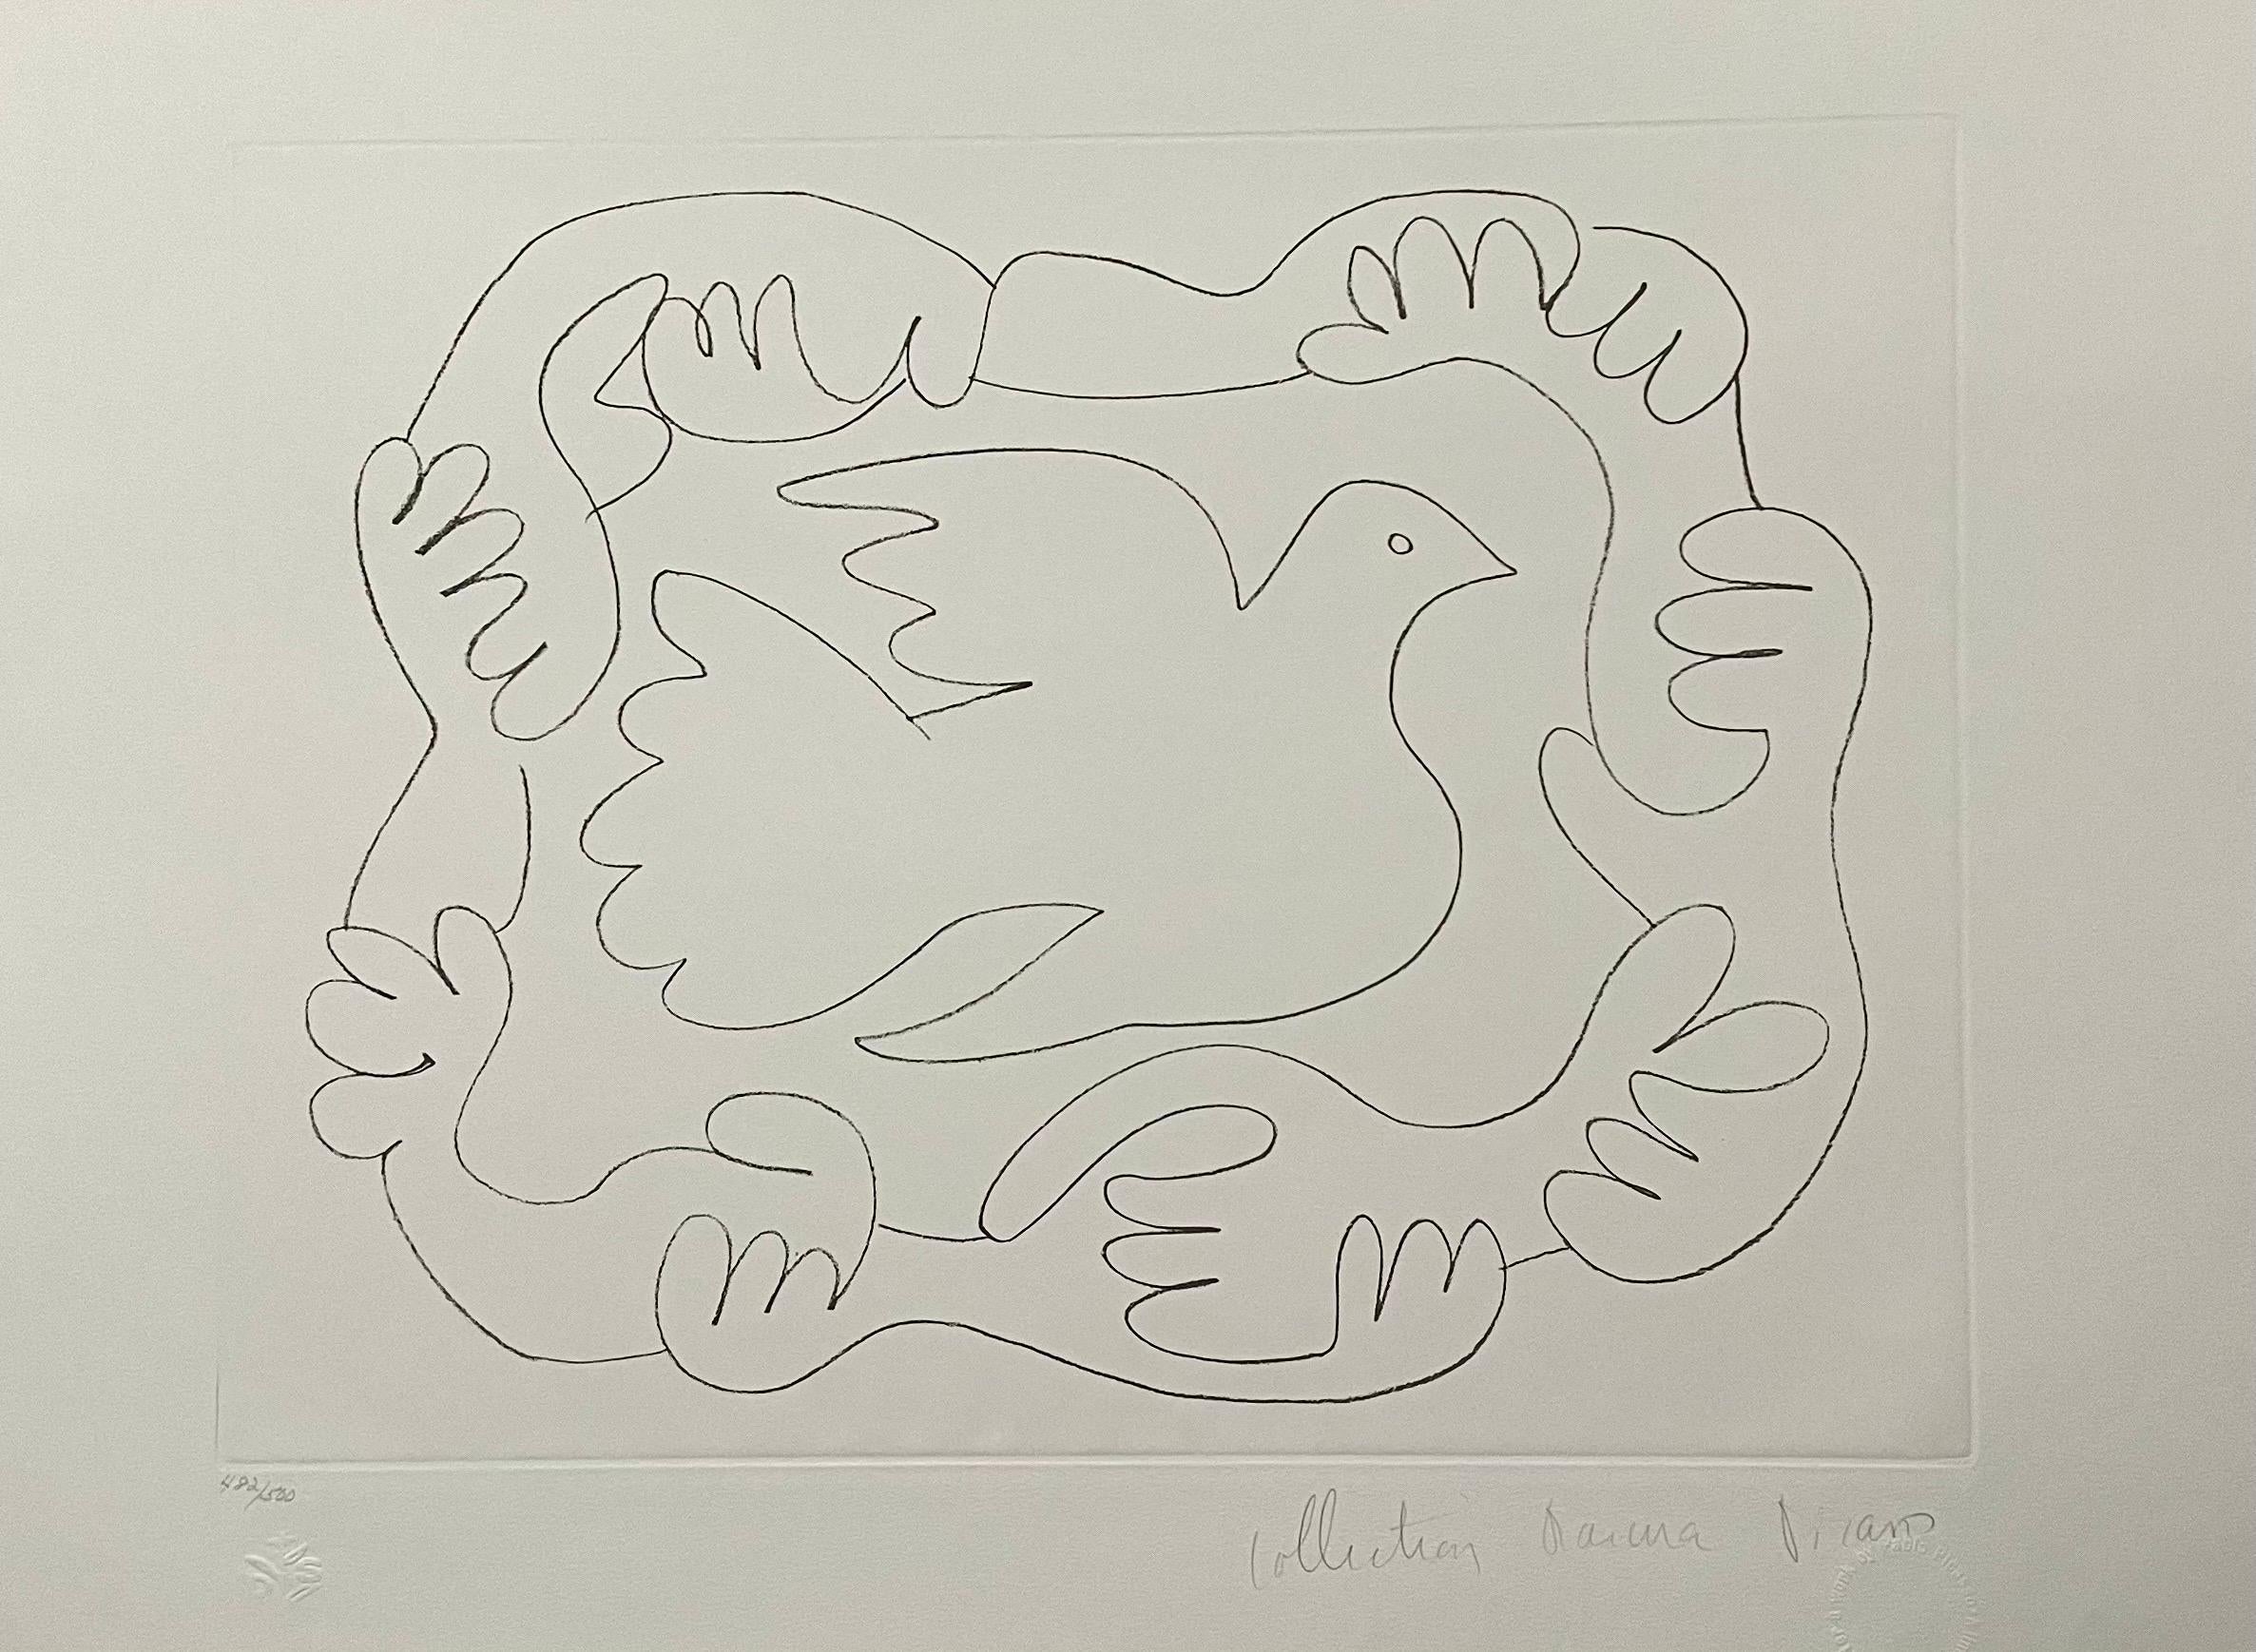 Nachlass von Pablo Picasso, handsignierte Lithographie, Fauvistische Taube des Friedens